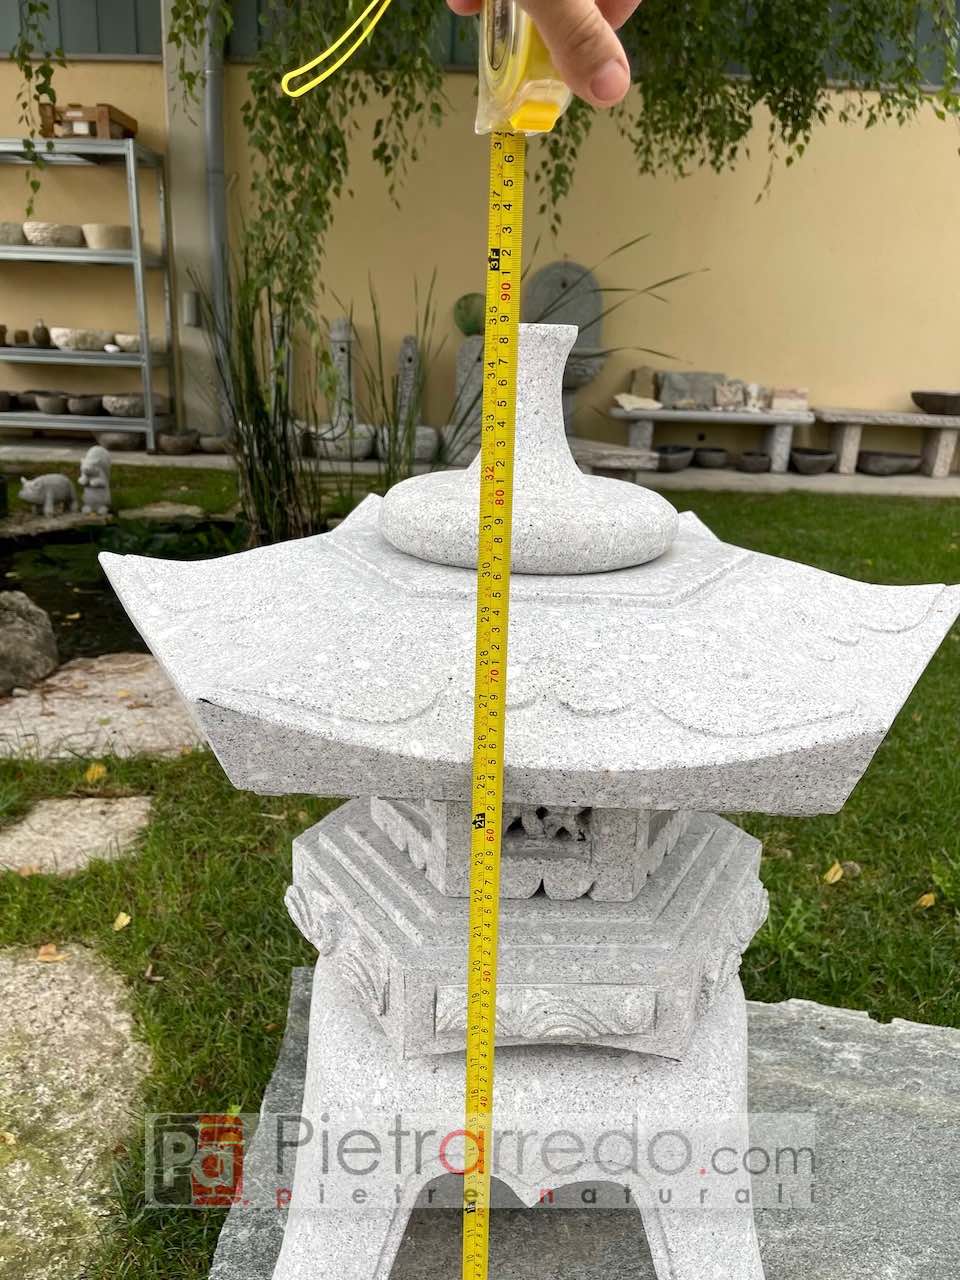 costo lanterna giapponese per arredo giardino vera in pietra granito prezzo pietrarredo